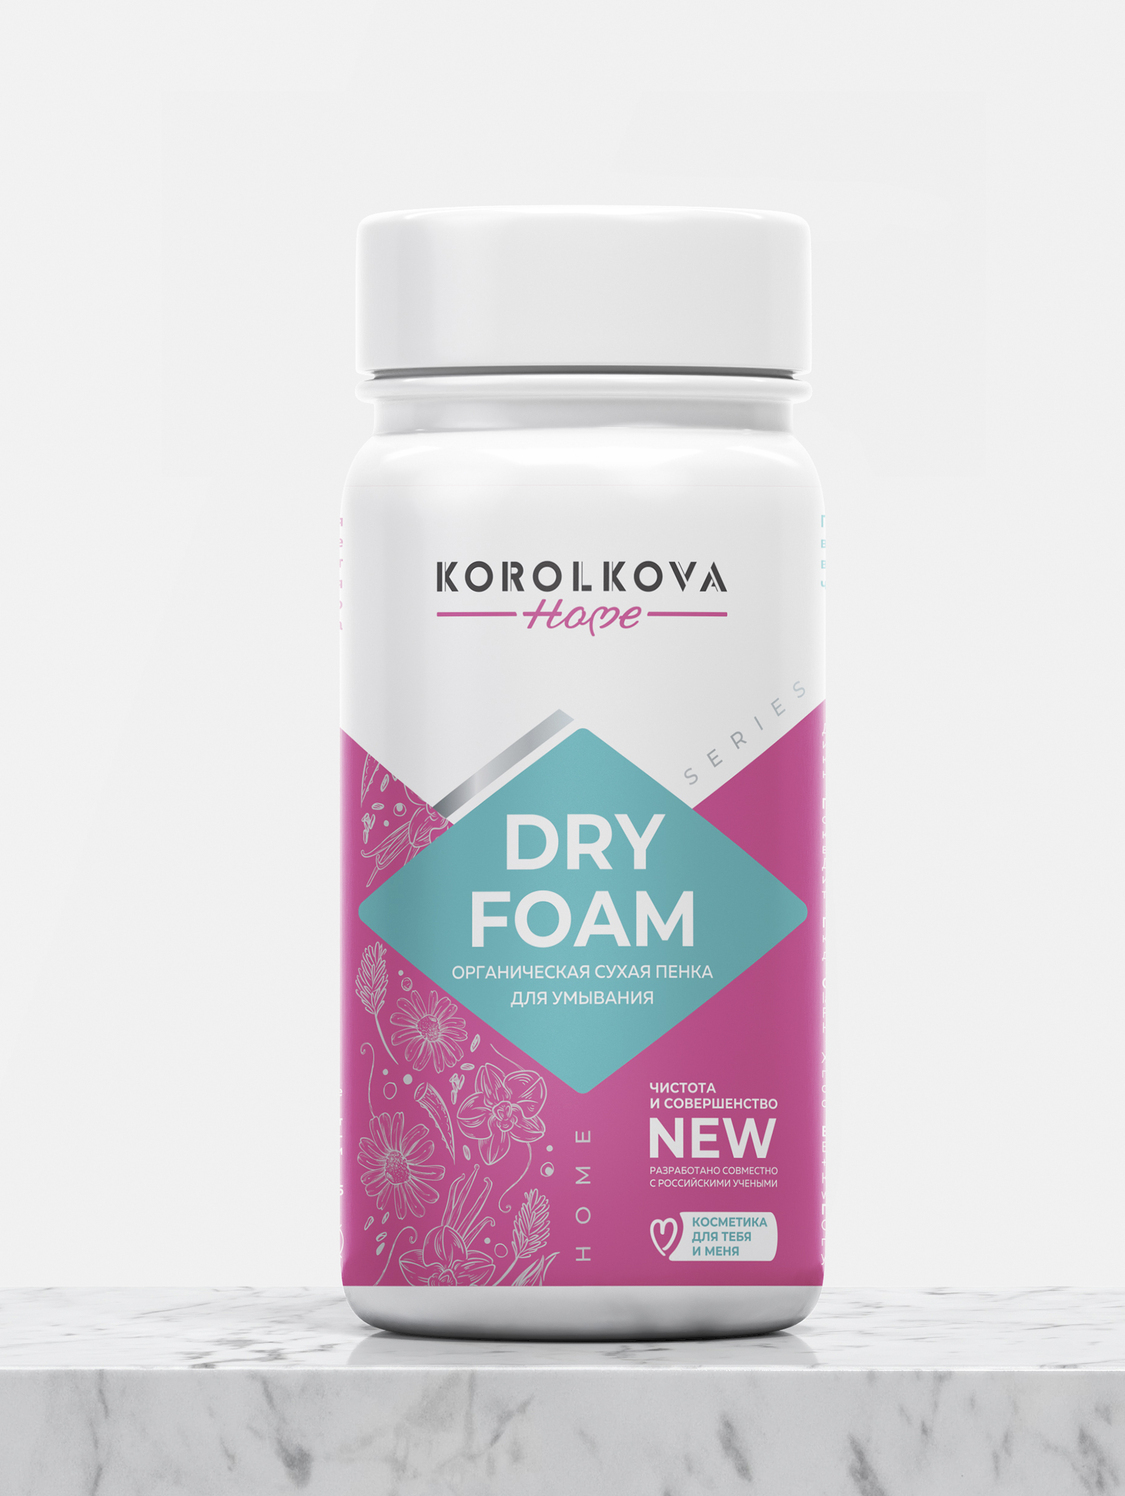 DRY FOAM органическая сухая пенка для умывания от Korolkova (Королькова)